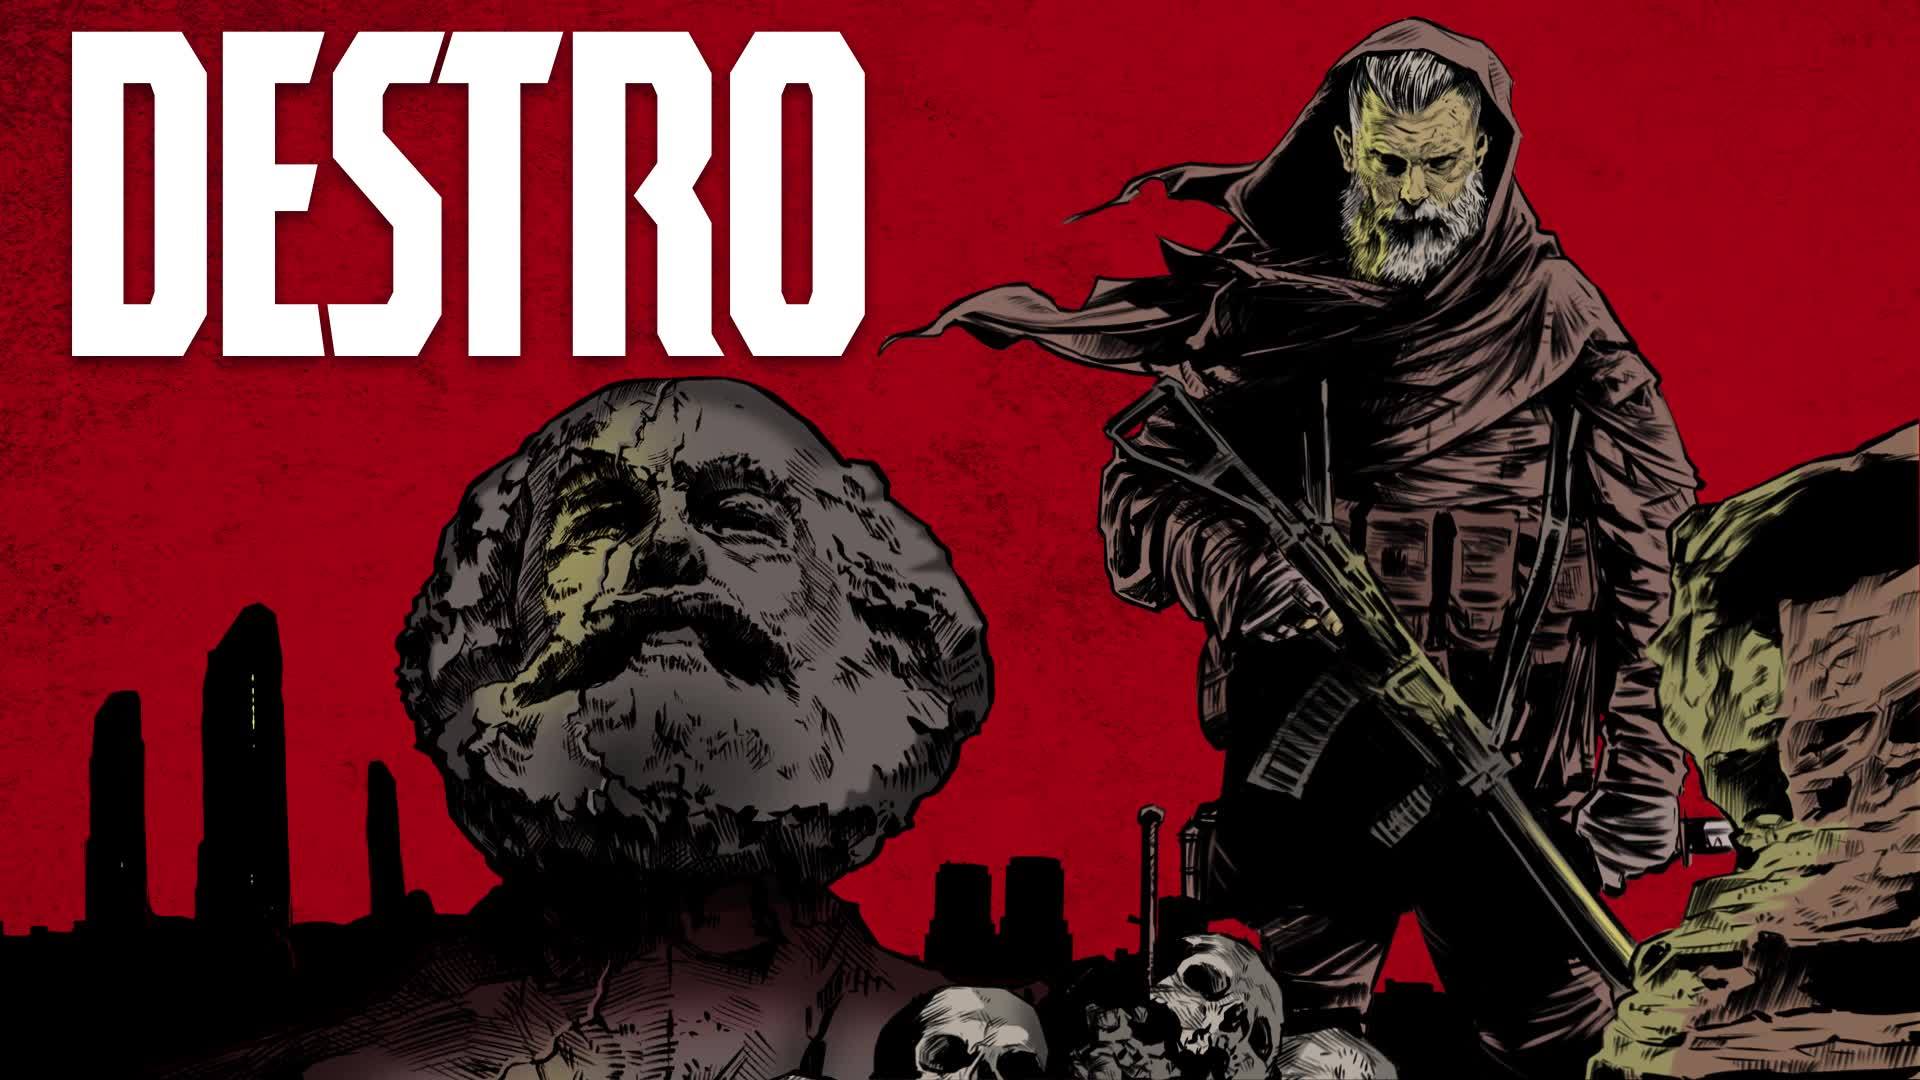 Quadrinhos: Destro, herói brasileiro, tem mais de 15 mil leitores nos EUA